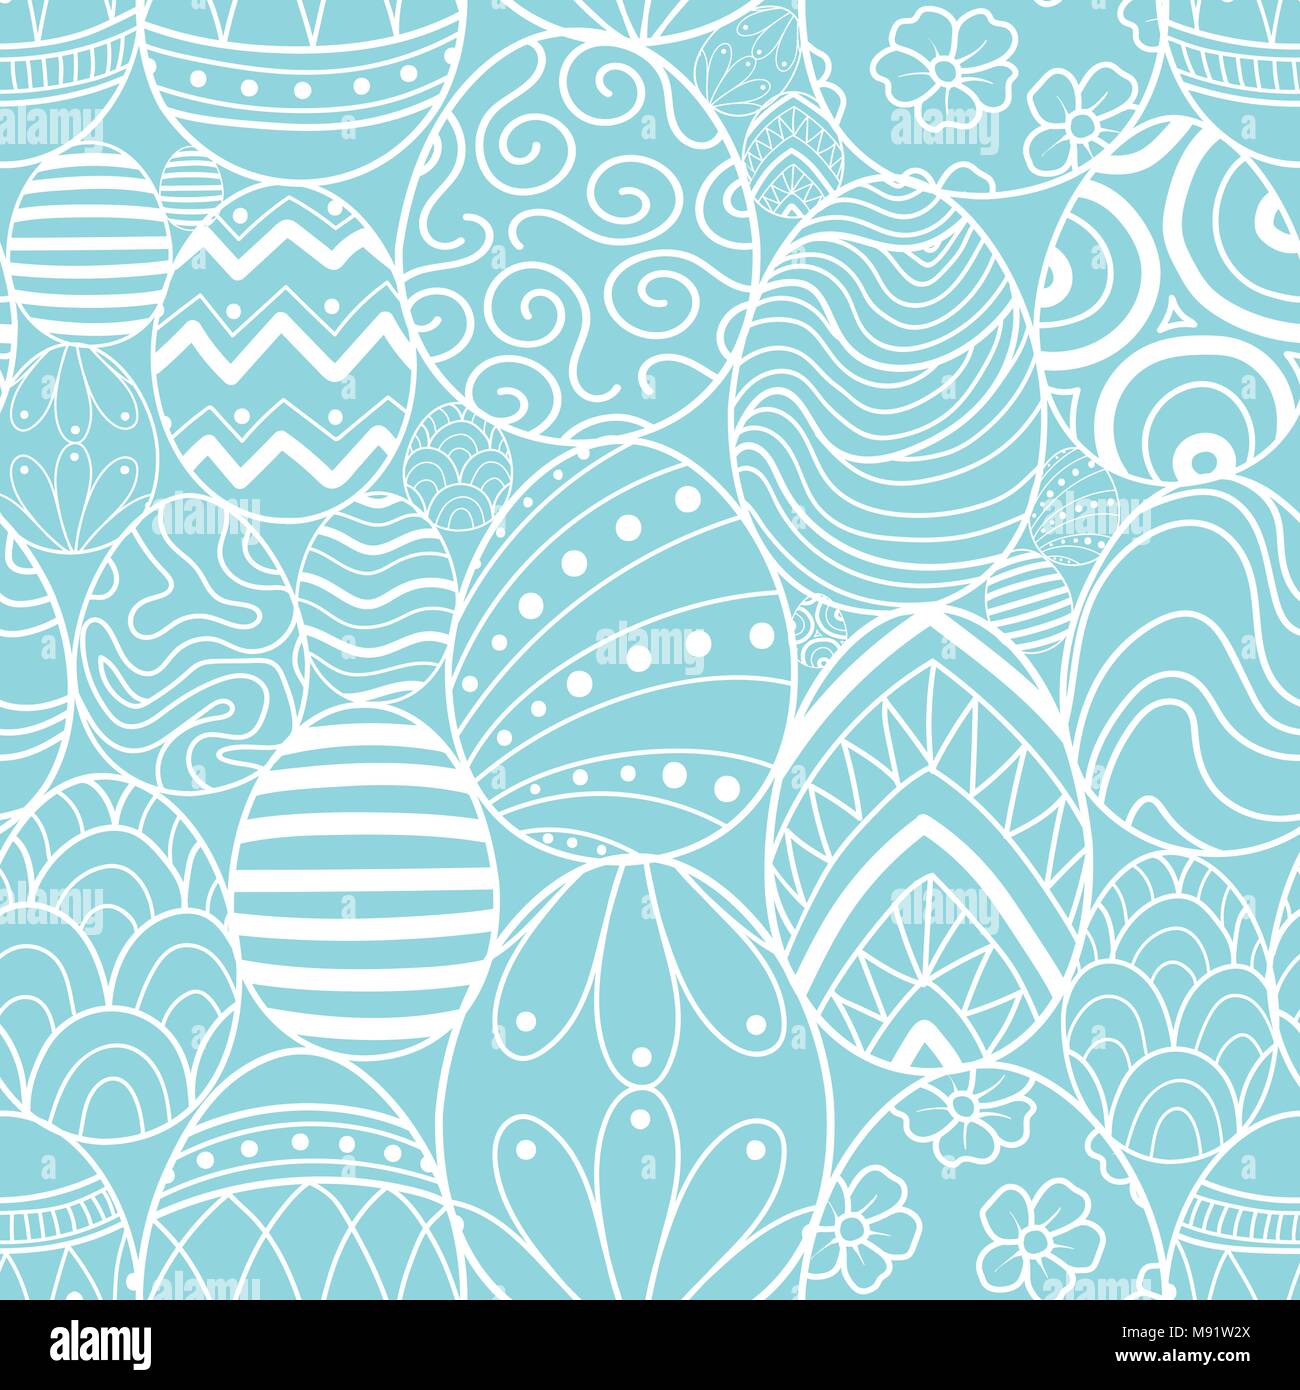 Easter eggs in white outline random on blue background. Cute hand drawn seamless pattern design for Easter festival in vector illustration. Stock Vector